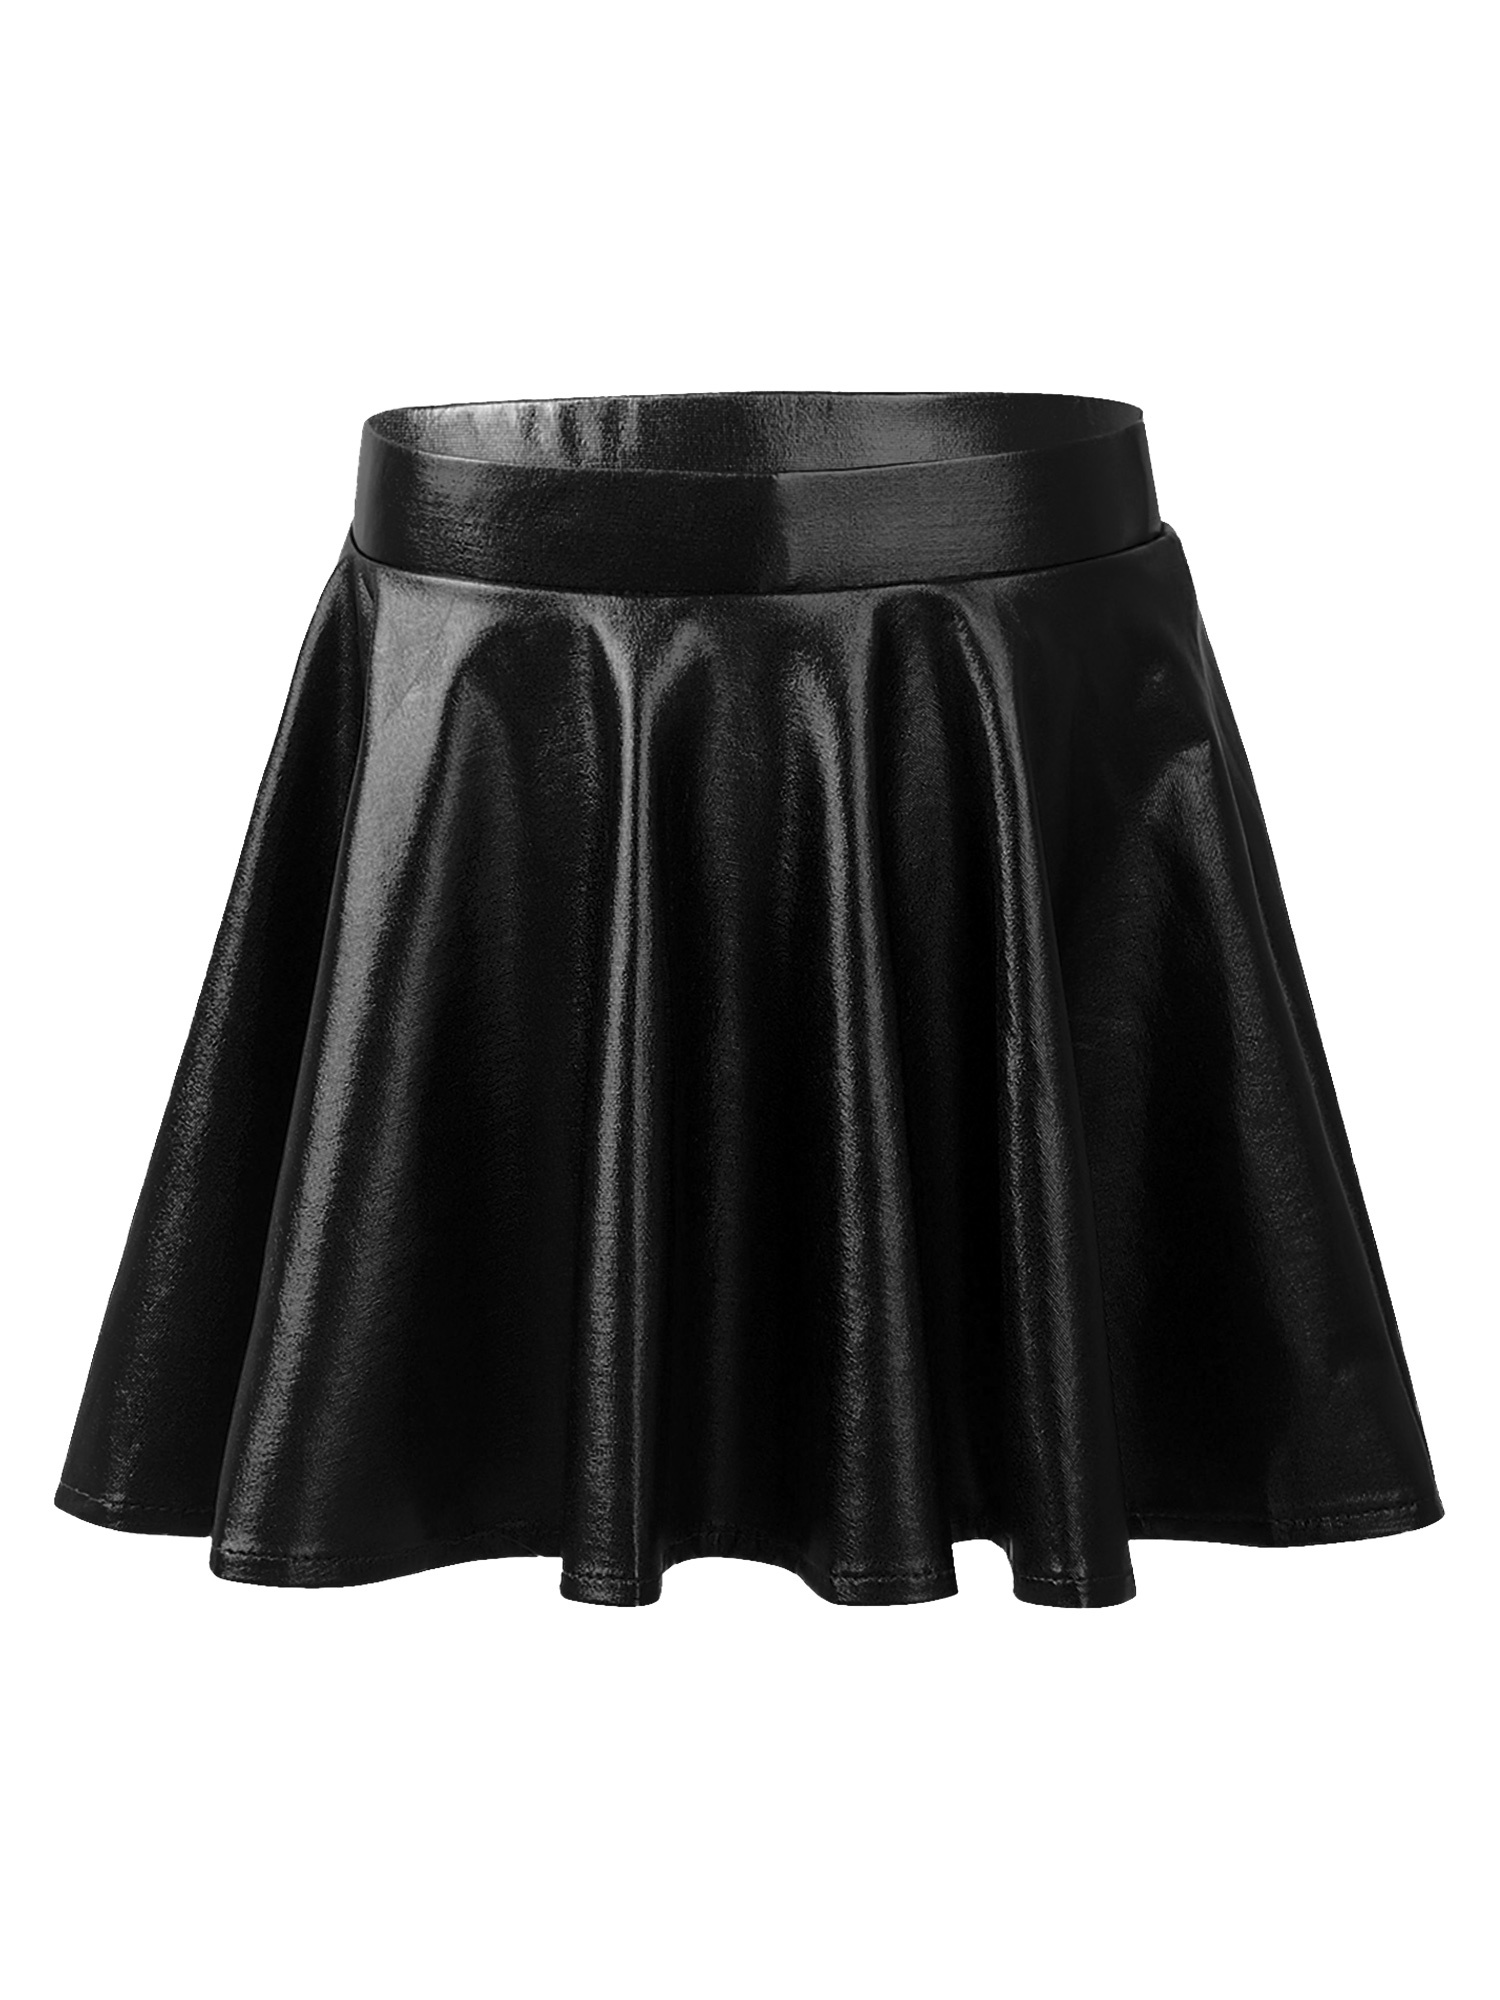 Ketyyh-chn99 Girls Skirt Mini Pleated Flared Skirt School Dance Skirt ...